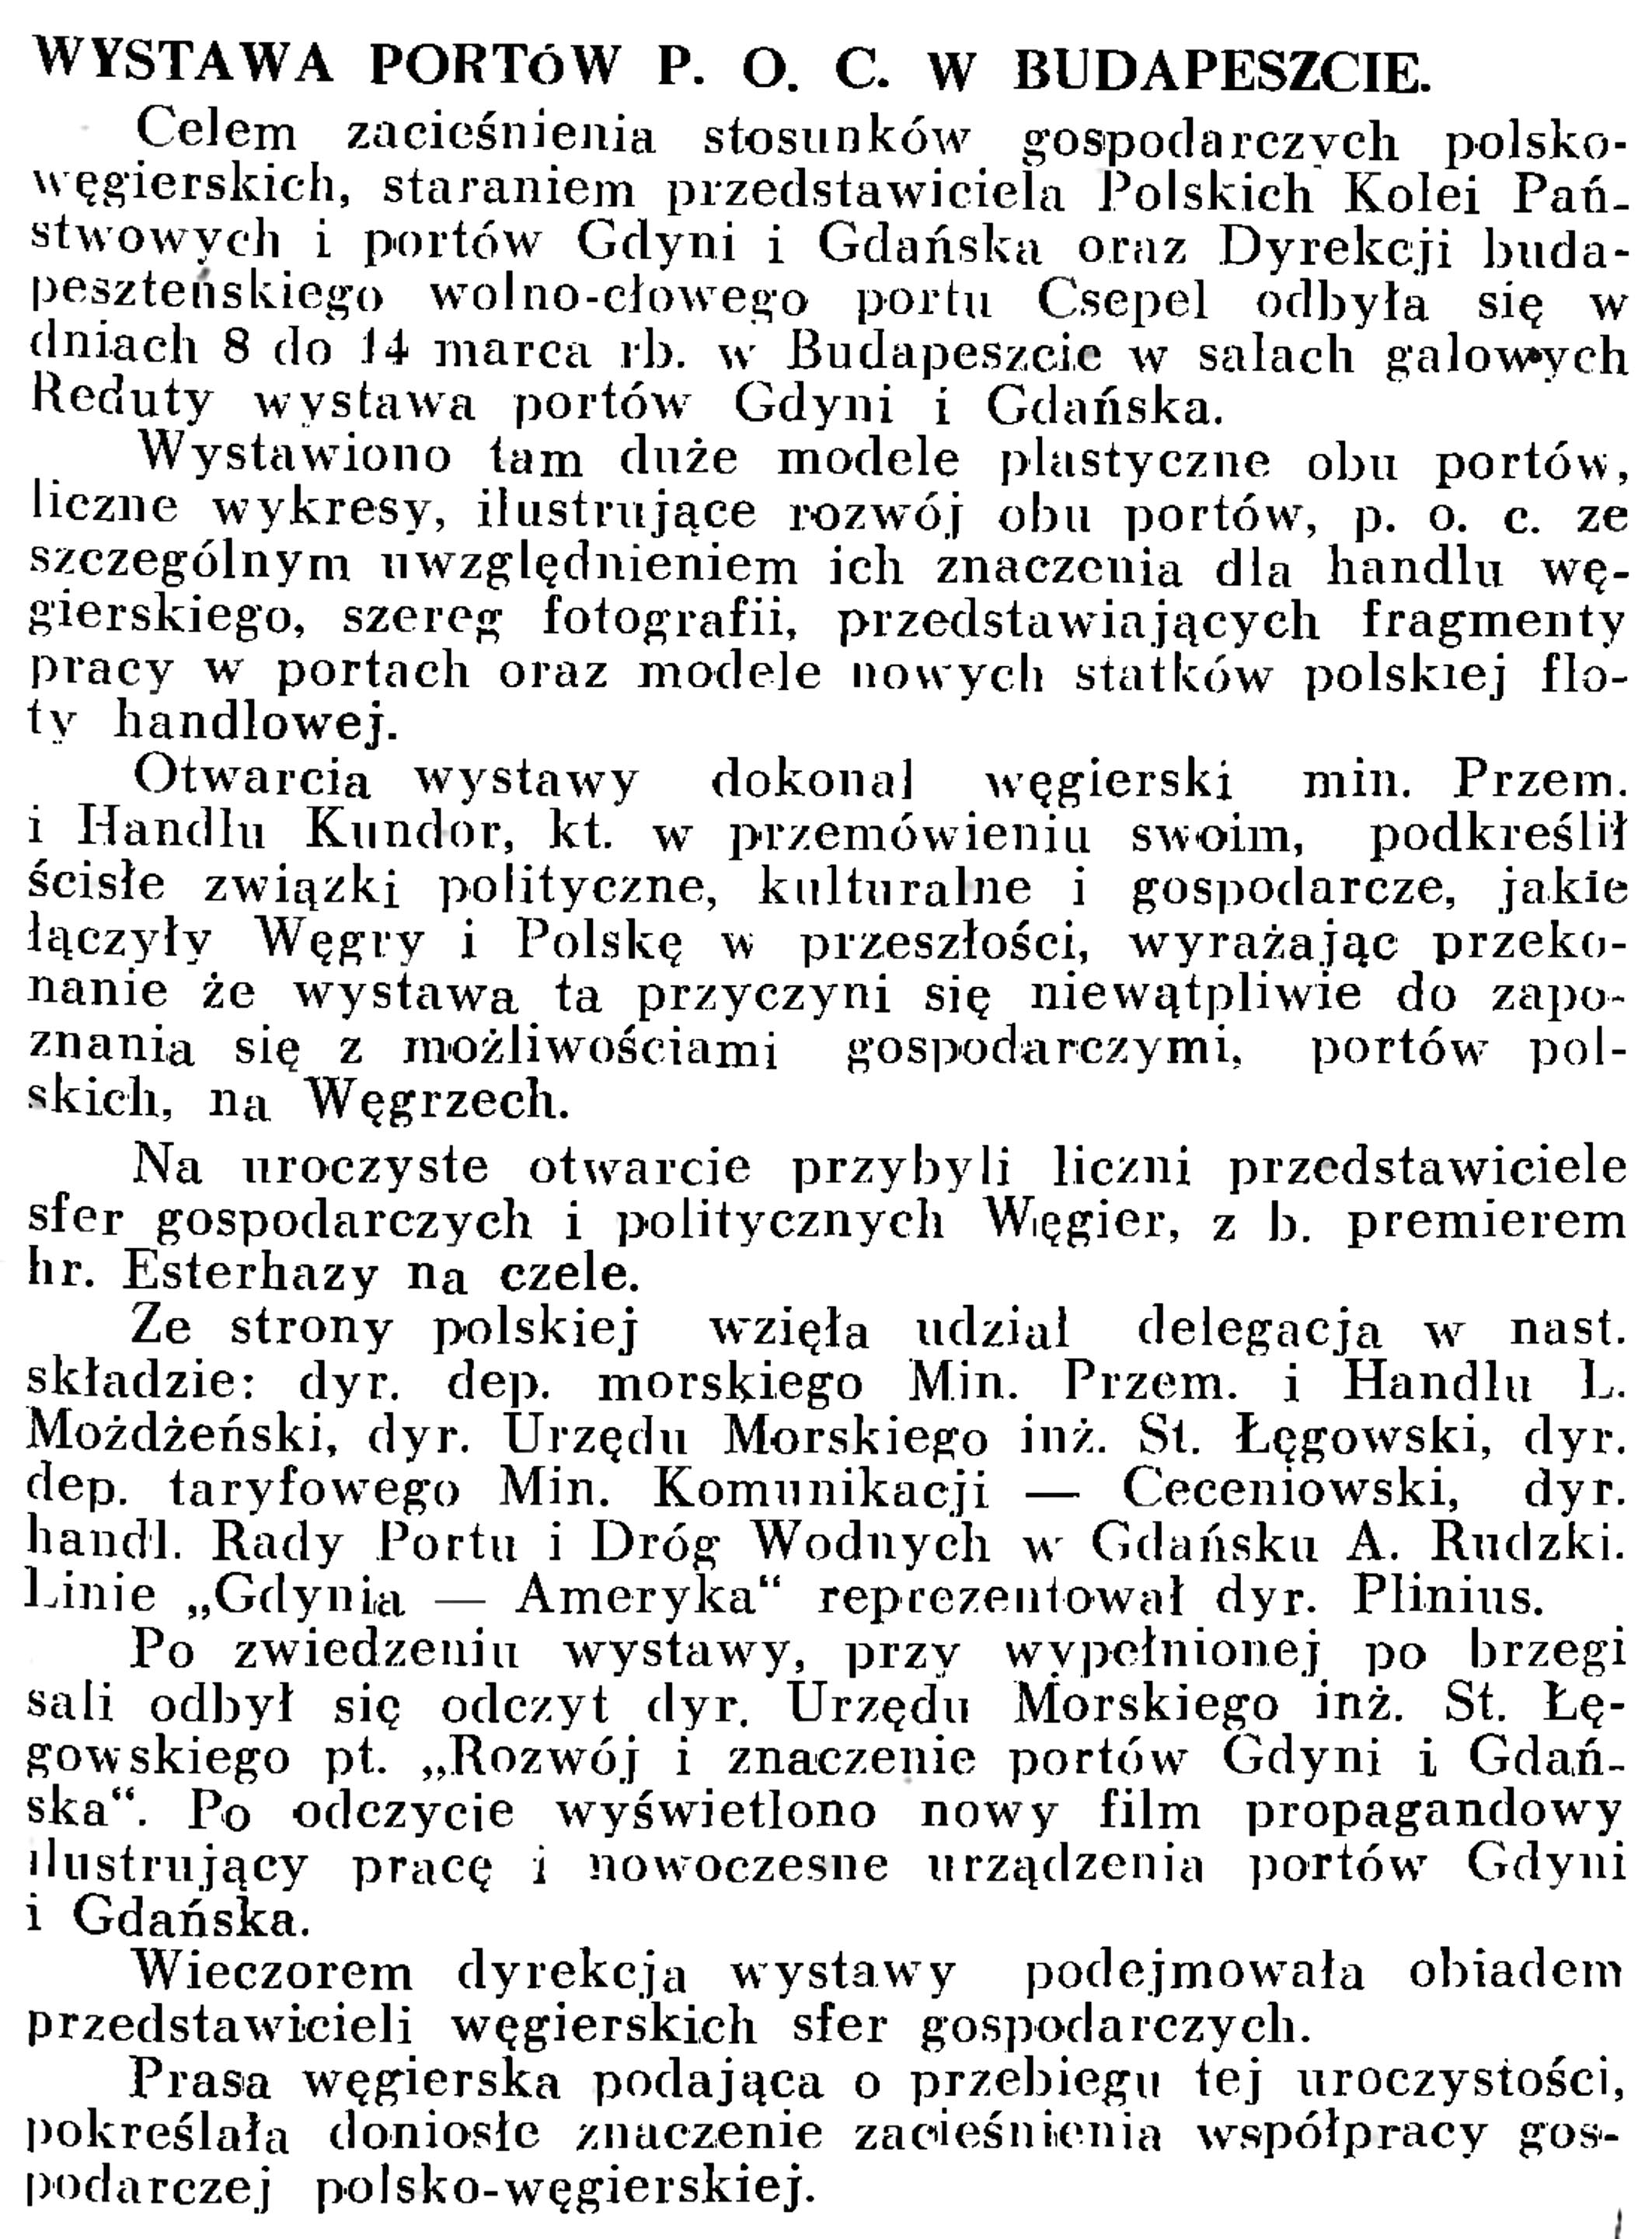 Wystawa portów P. O. C. w Budapeszcie // Wiadomości Portowe. - 1939, nr 3, s. 15 